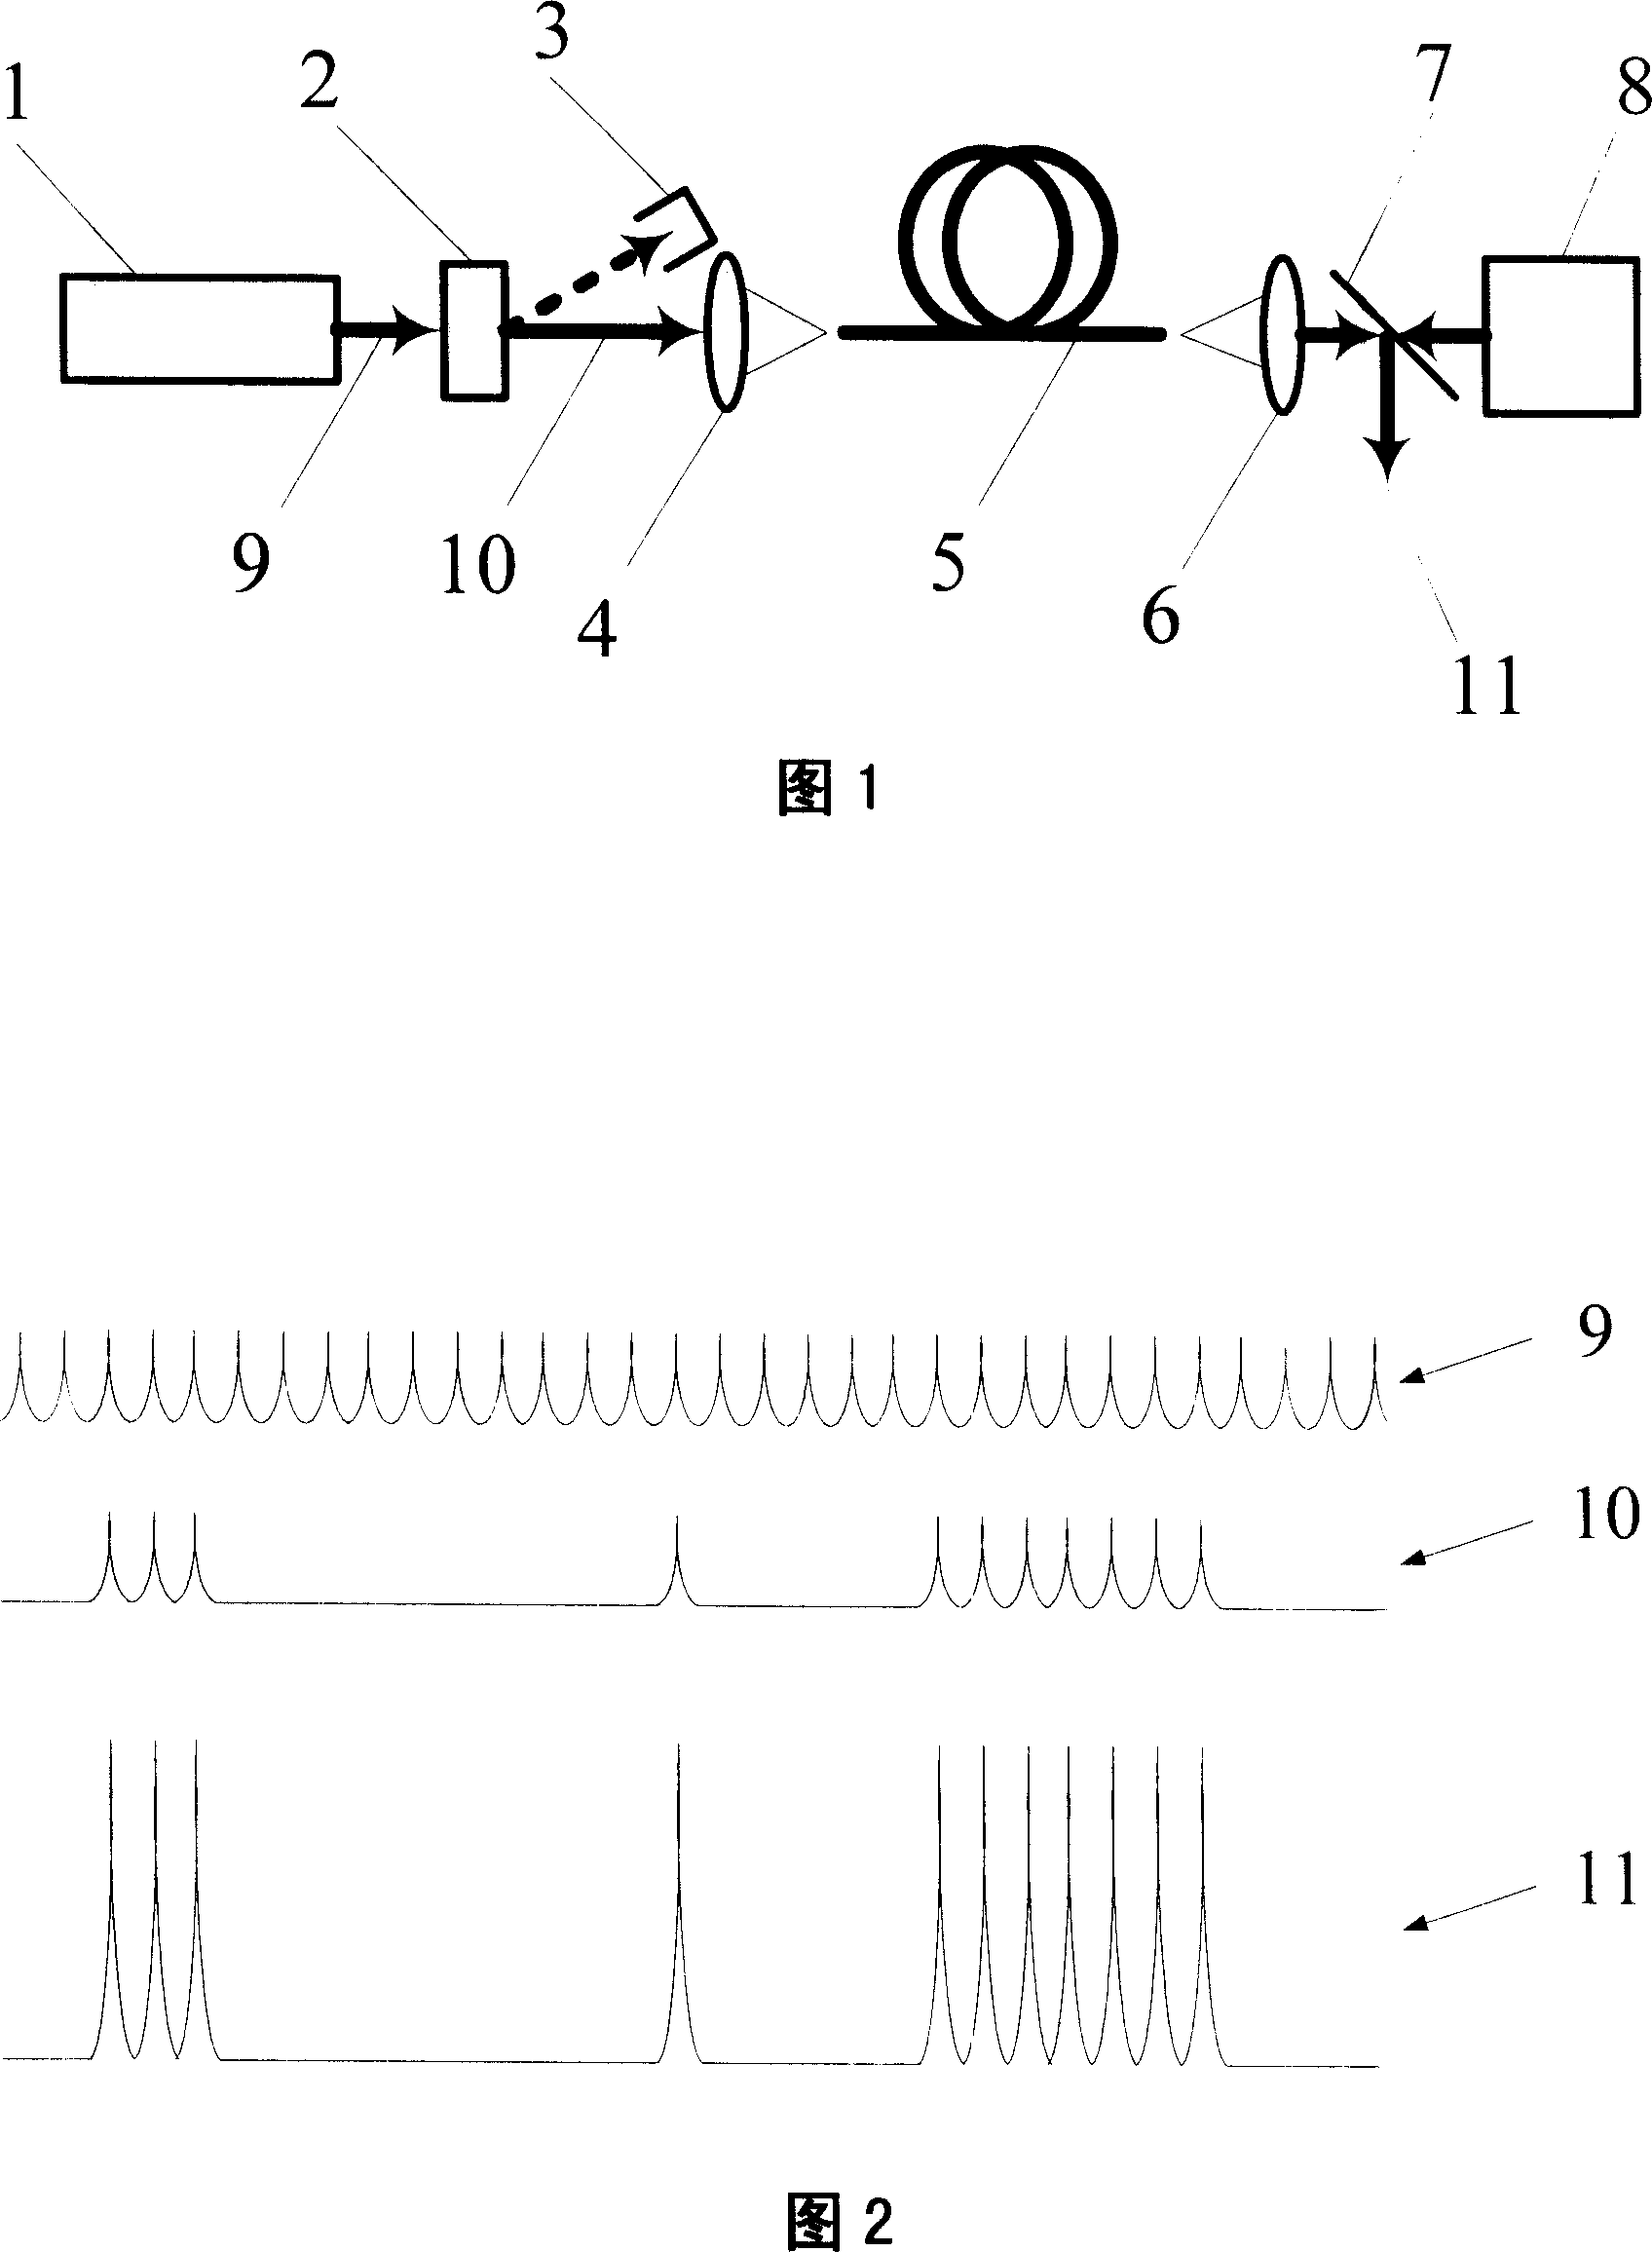 Narrow pulse fiber amplifier